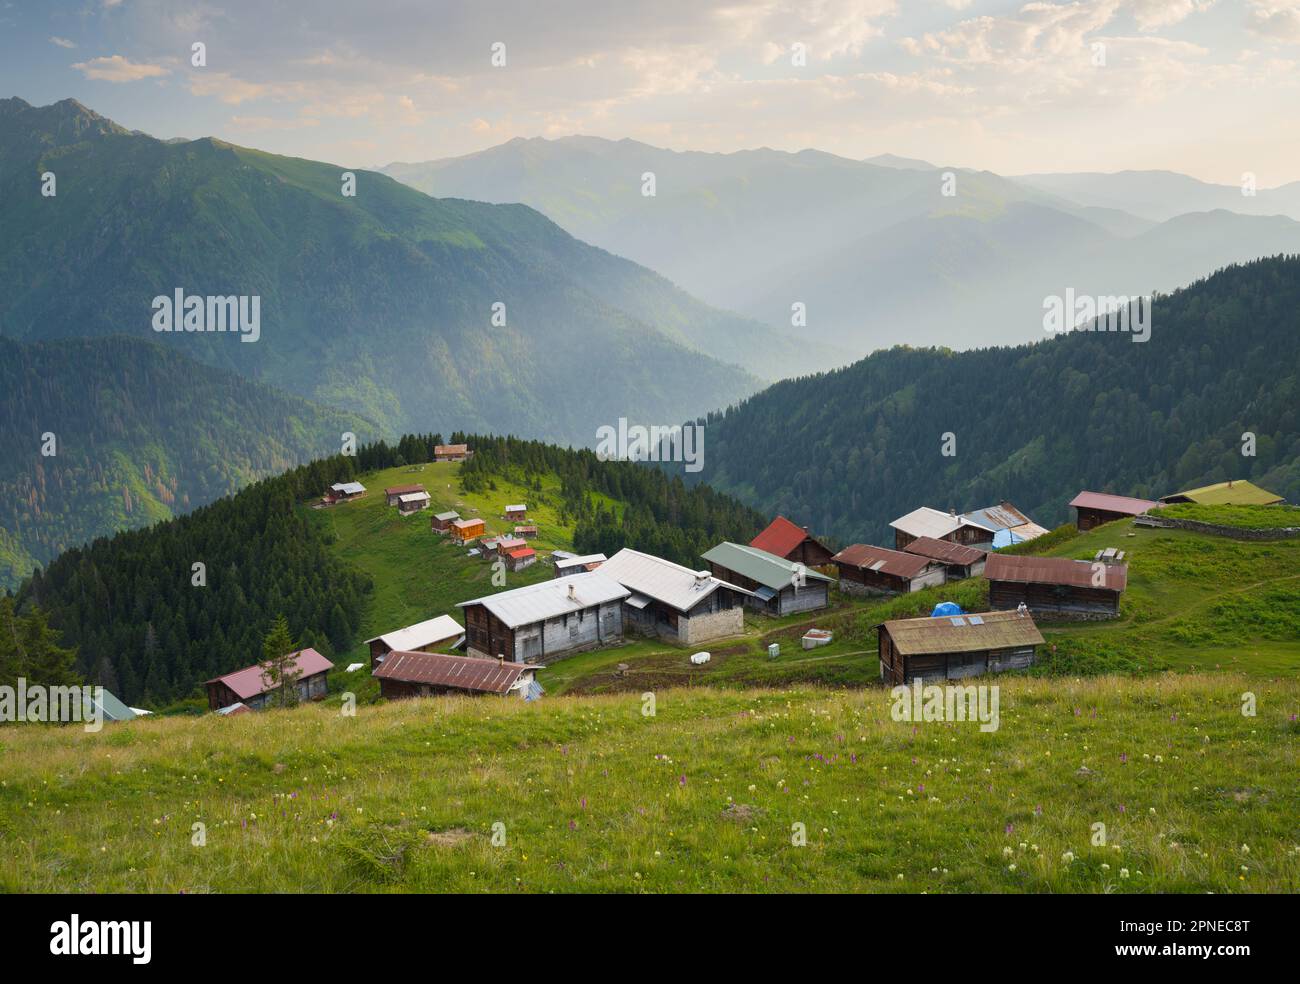 Panoramablick auf das Pokut-Plateau. Sommer. Reisen in der Türkei. Schwarzmeerregion in Türkiye. Camlihemsin, Rize Stockfoto